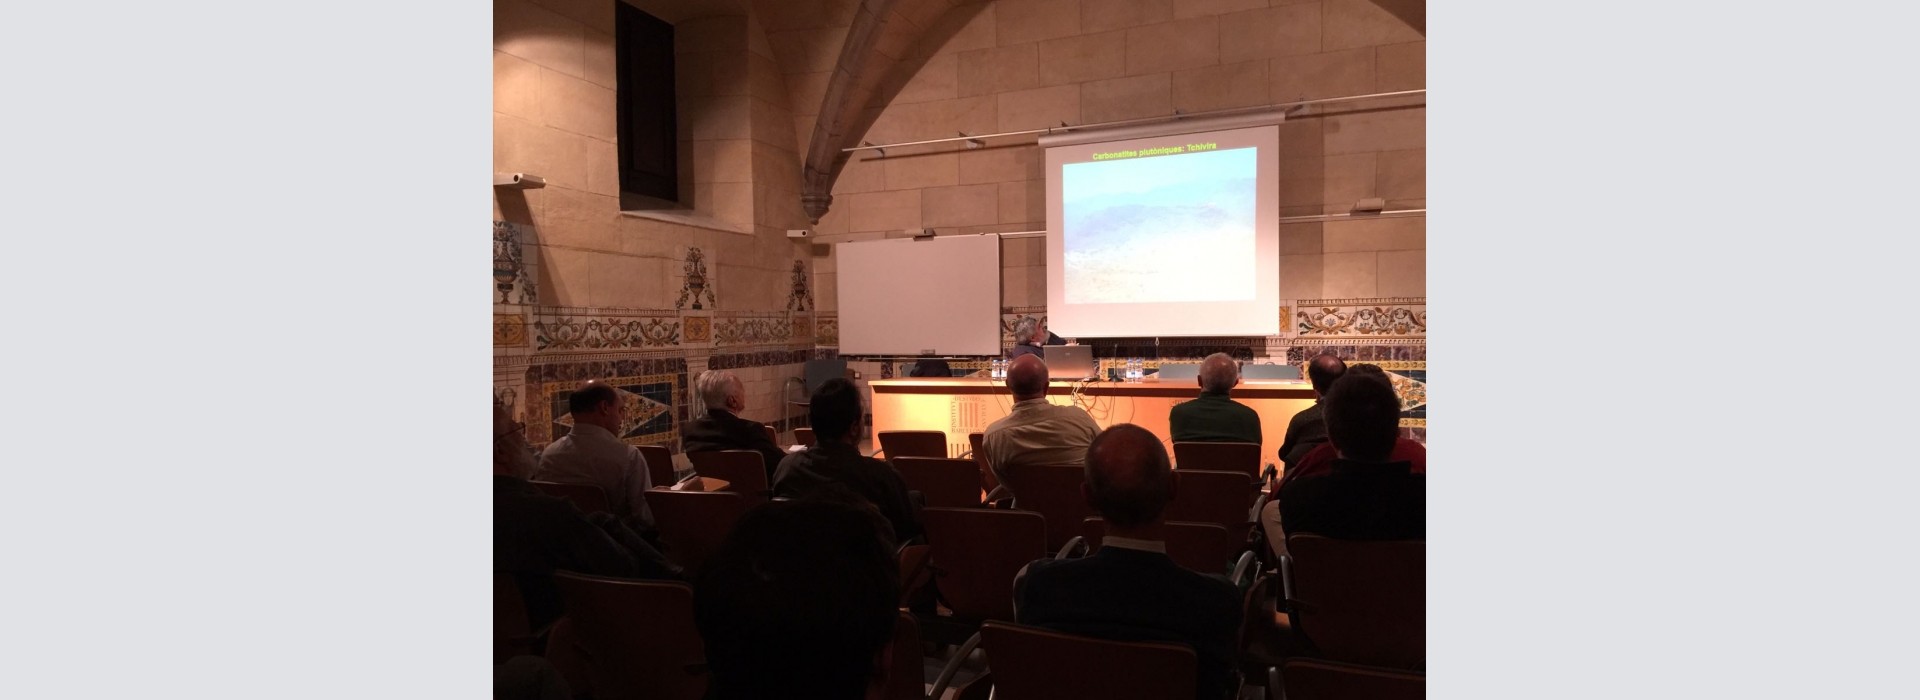 Conferencias mineralógicas de otoño en el Institut d'Estudis Catalans 2019